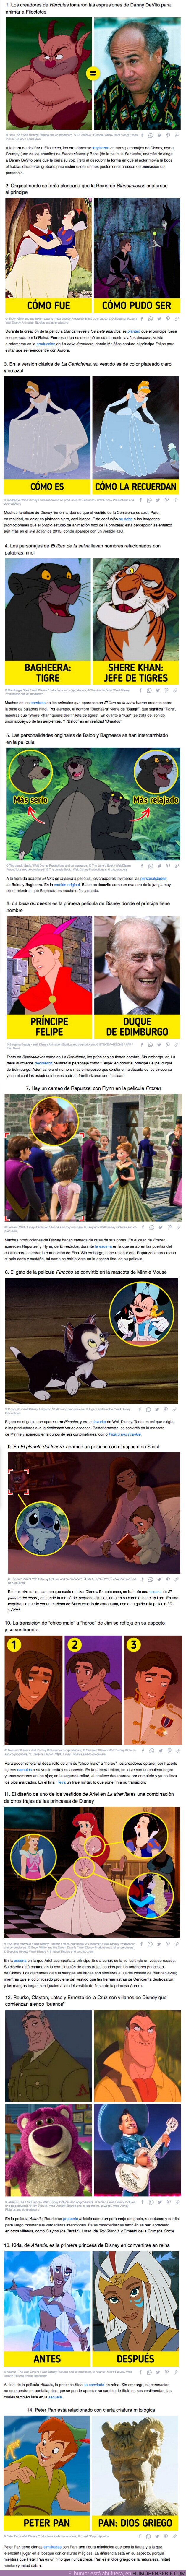 67138 - GALERÍA: 14 Detalles sobre las películas de Disney que a muchos se les pasaron por alto